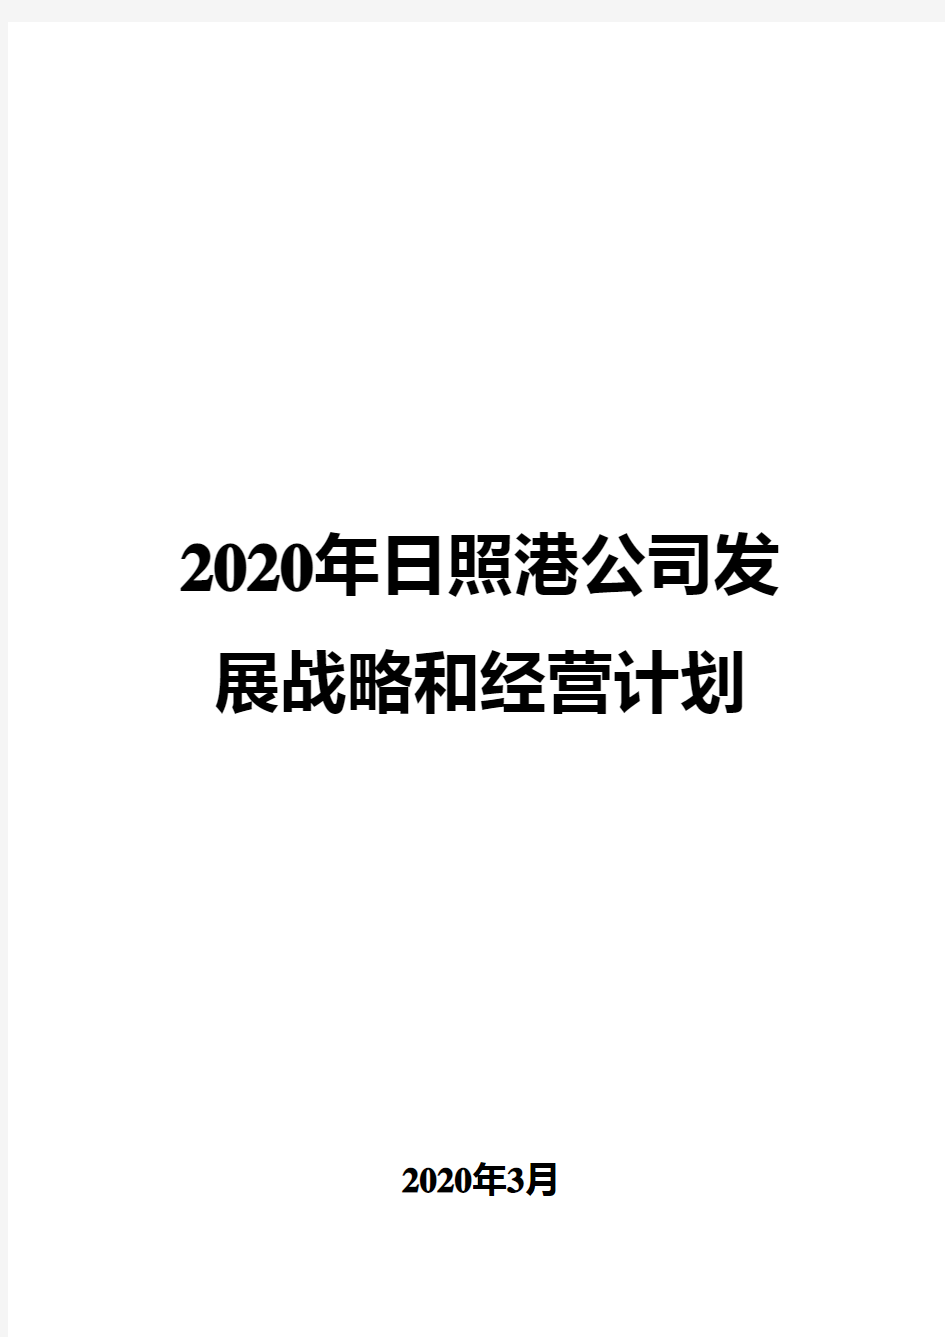 2020年日照港公司发展战略和经营计划